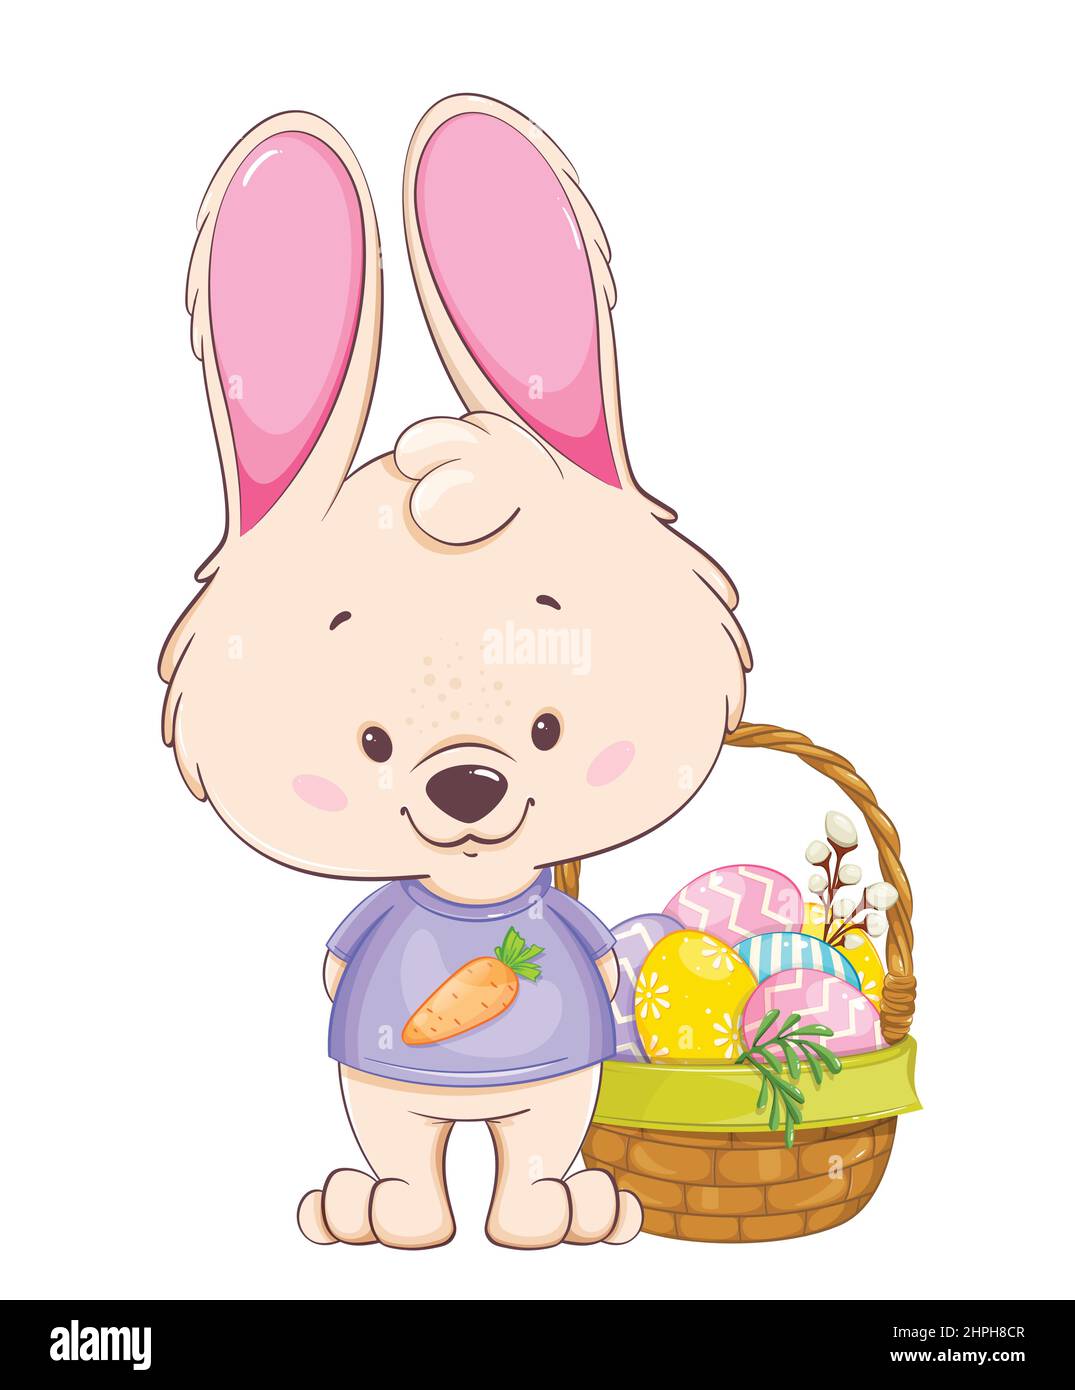 Frohe Ostern Grußkarte. Lustige Zeichentrickfigur Kaninchen in der Nähe Korb mit bunten Eiern stehen. Osterhase. Vektorgrafik für Aktien Stock Vektor